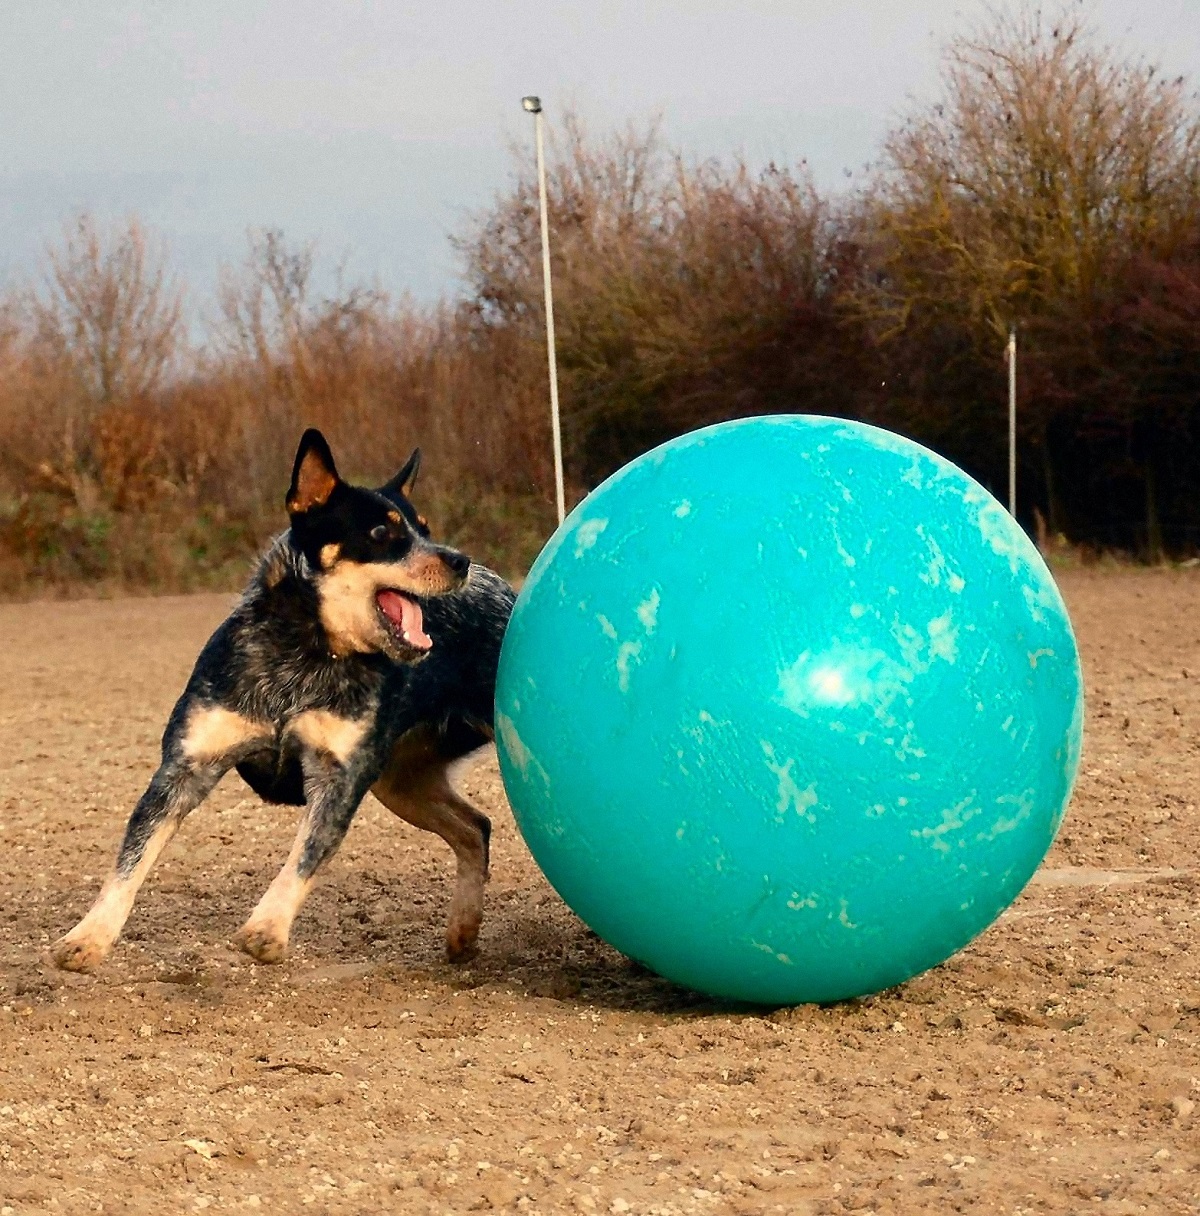 Australian Cattle Dog spielet mei in grutte bal